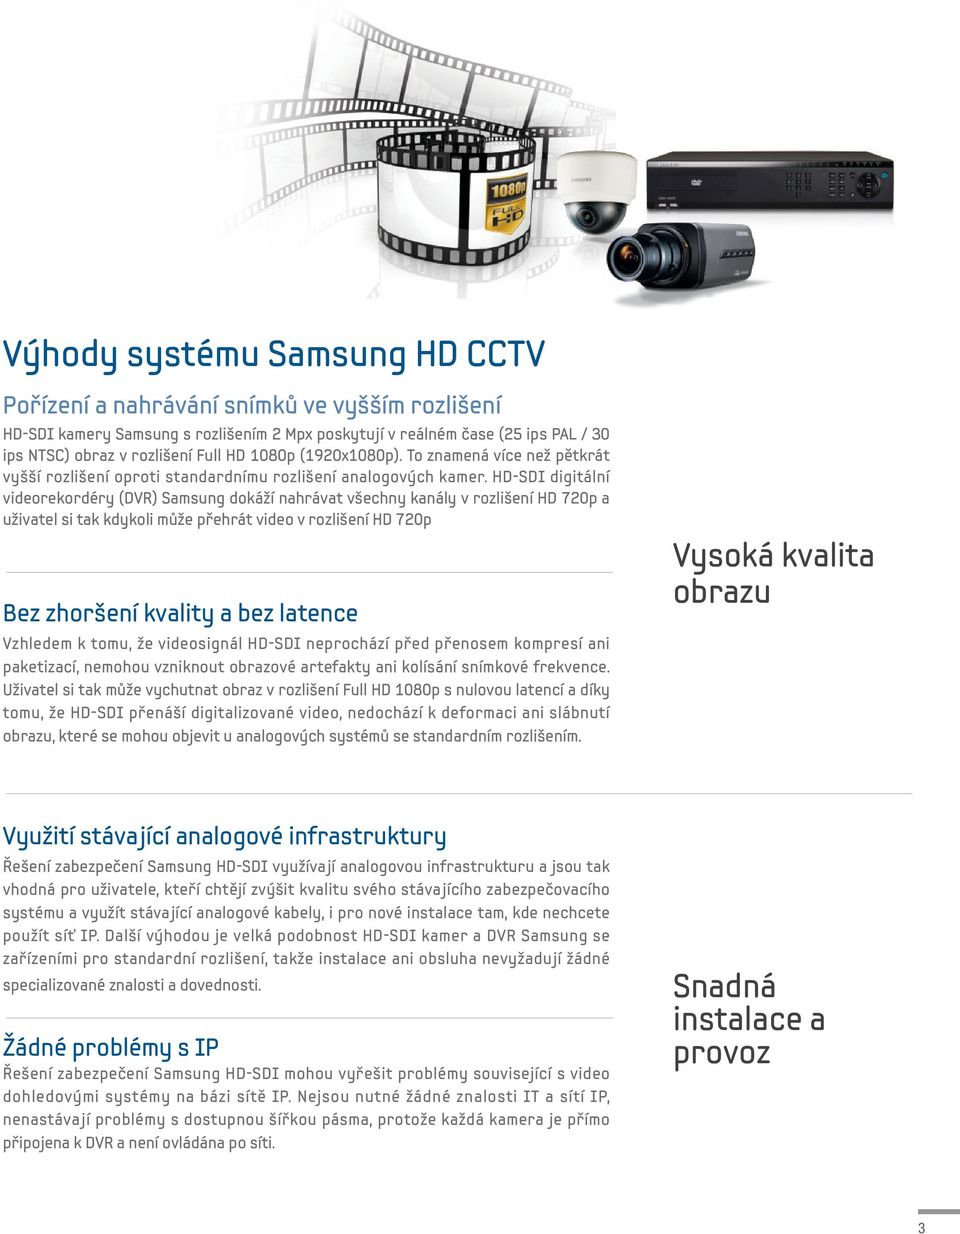 HD-SDI digitální videorekordéry (DVR) Samsung dokáží nahrávat všechny kanály v rozlišení HD 720p a uživatel si tak kdykoli může přehrát video v rozlišení HD 720p Bez zhoršení kvality a bez latence